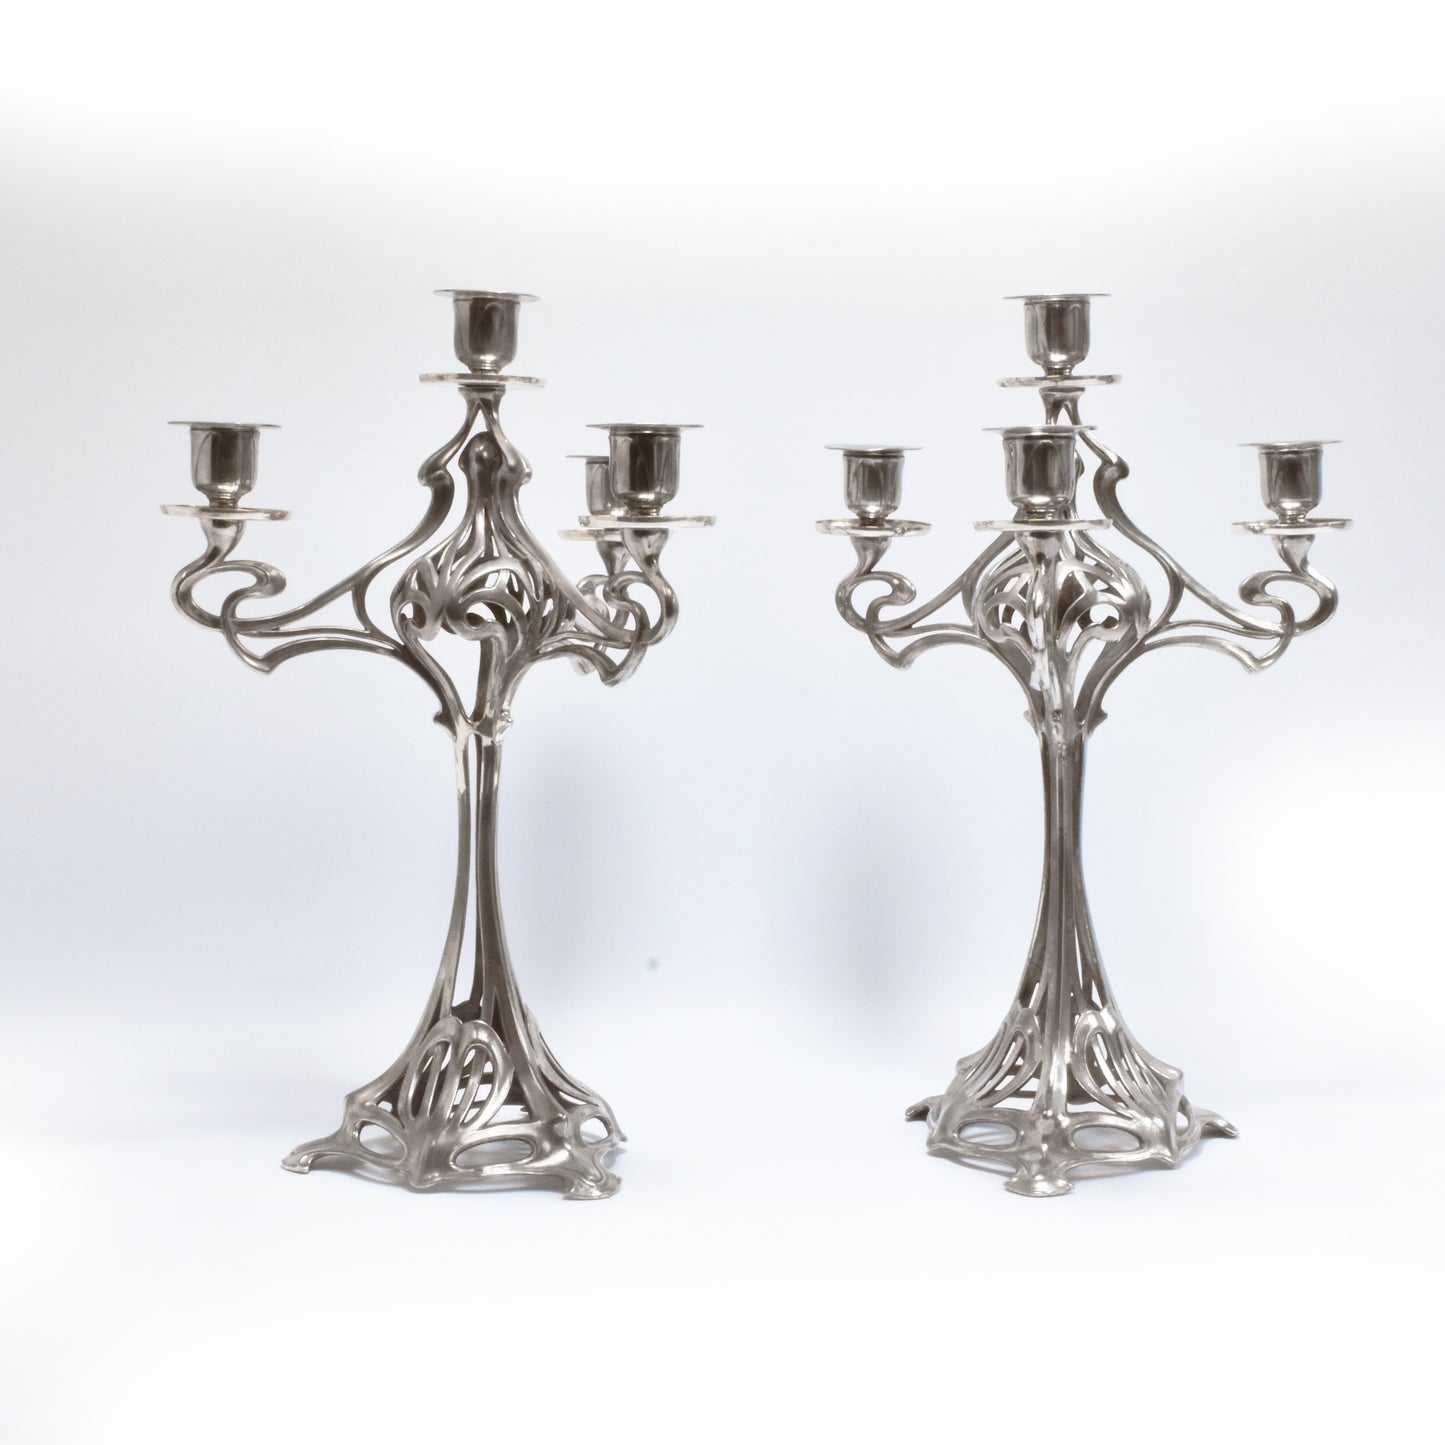 Art Nouveau candlestick set